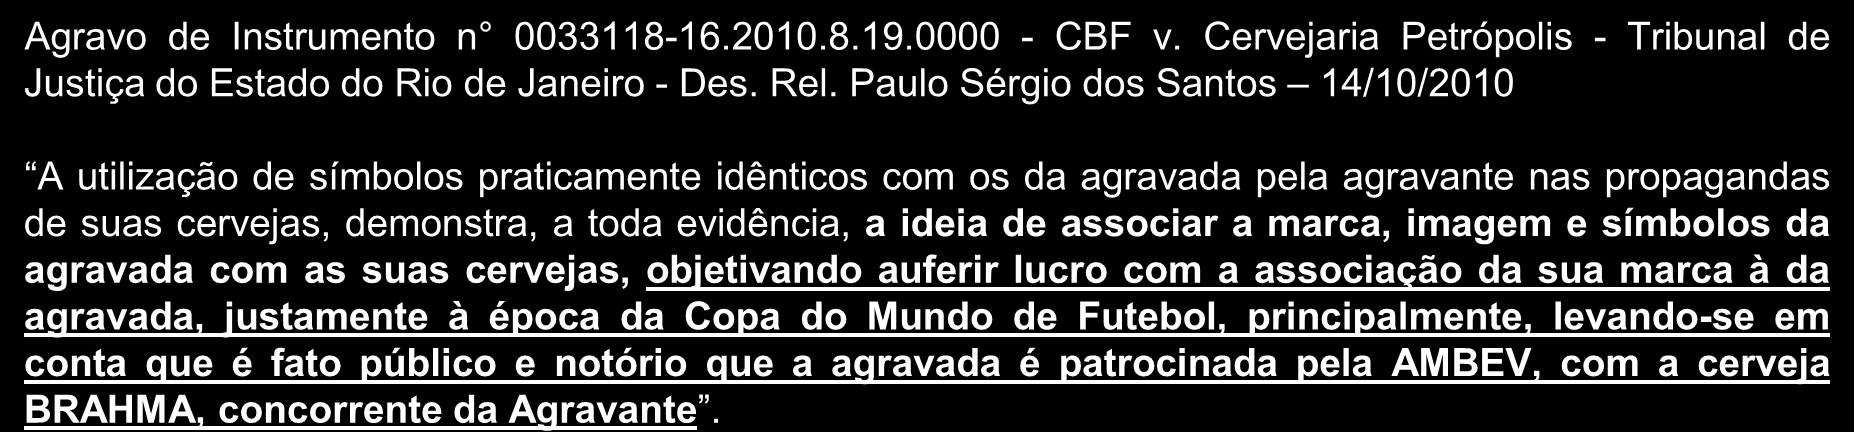 Casos Agravo de Instrumento n 0033118-16.2010.8.19.0000 - CBF v. Cervejaria Petrópolis - Tribunal de Justiça do Estado do Rio de Janeiro - Des. Rel.